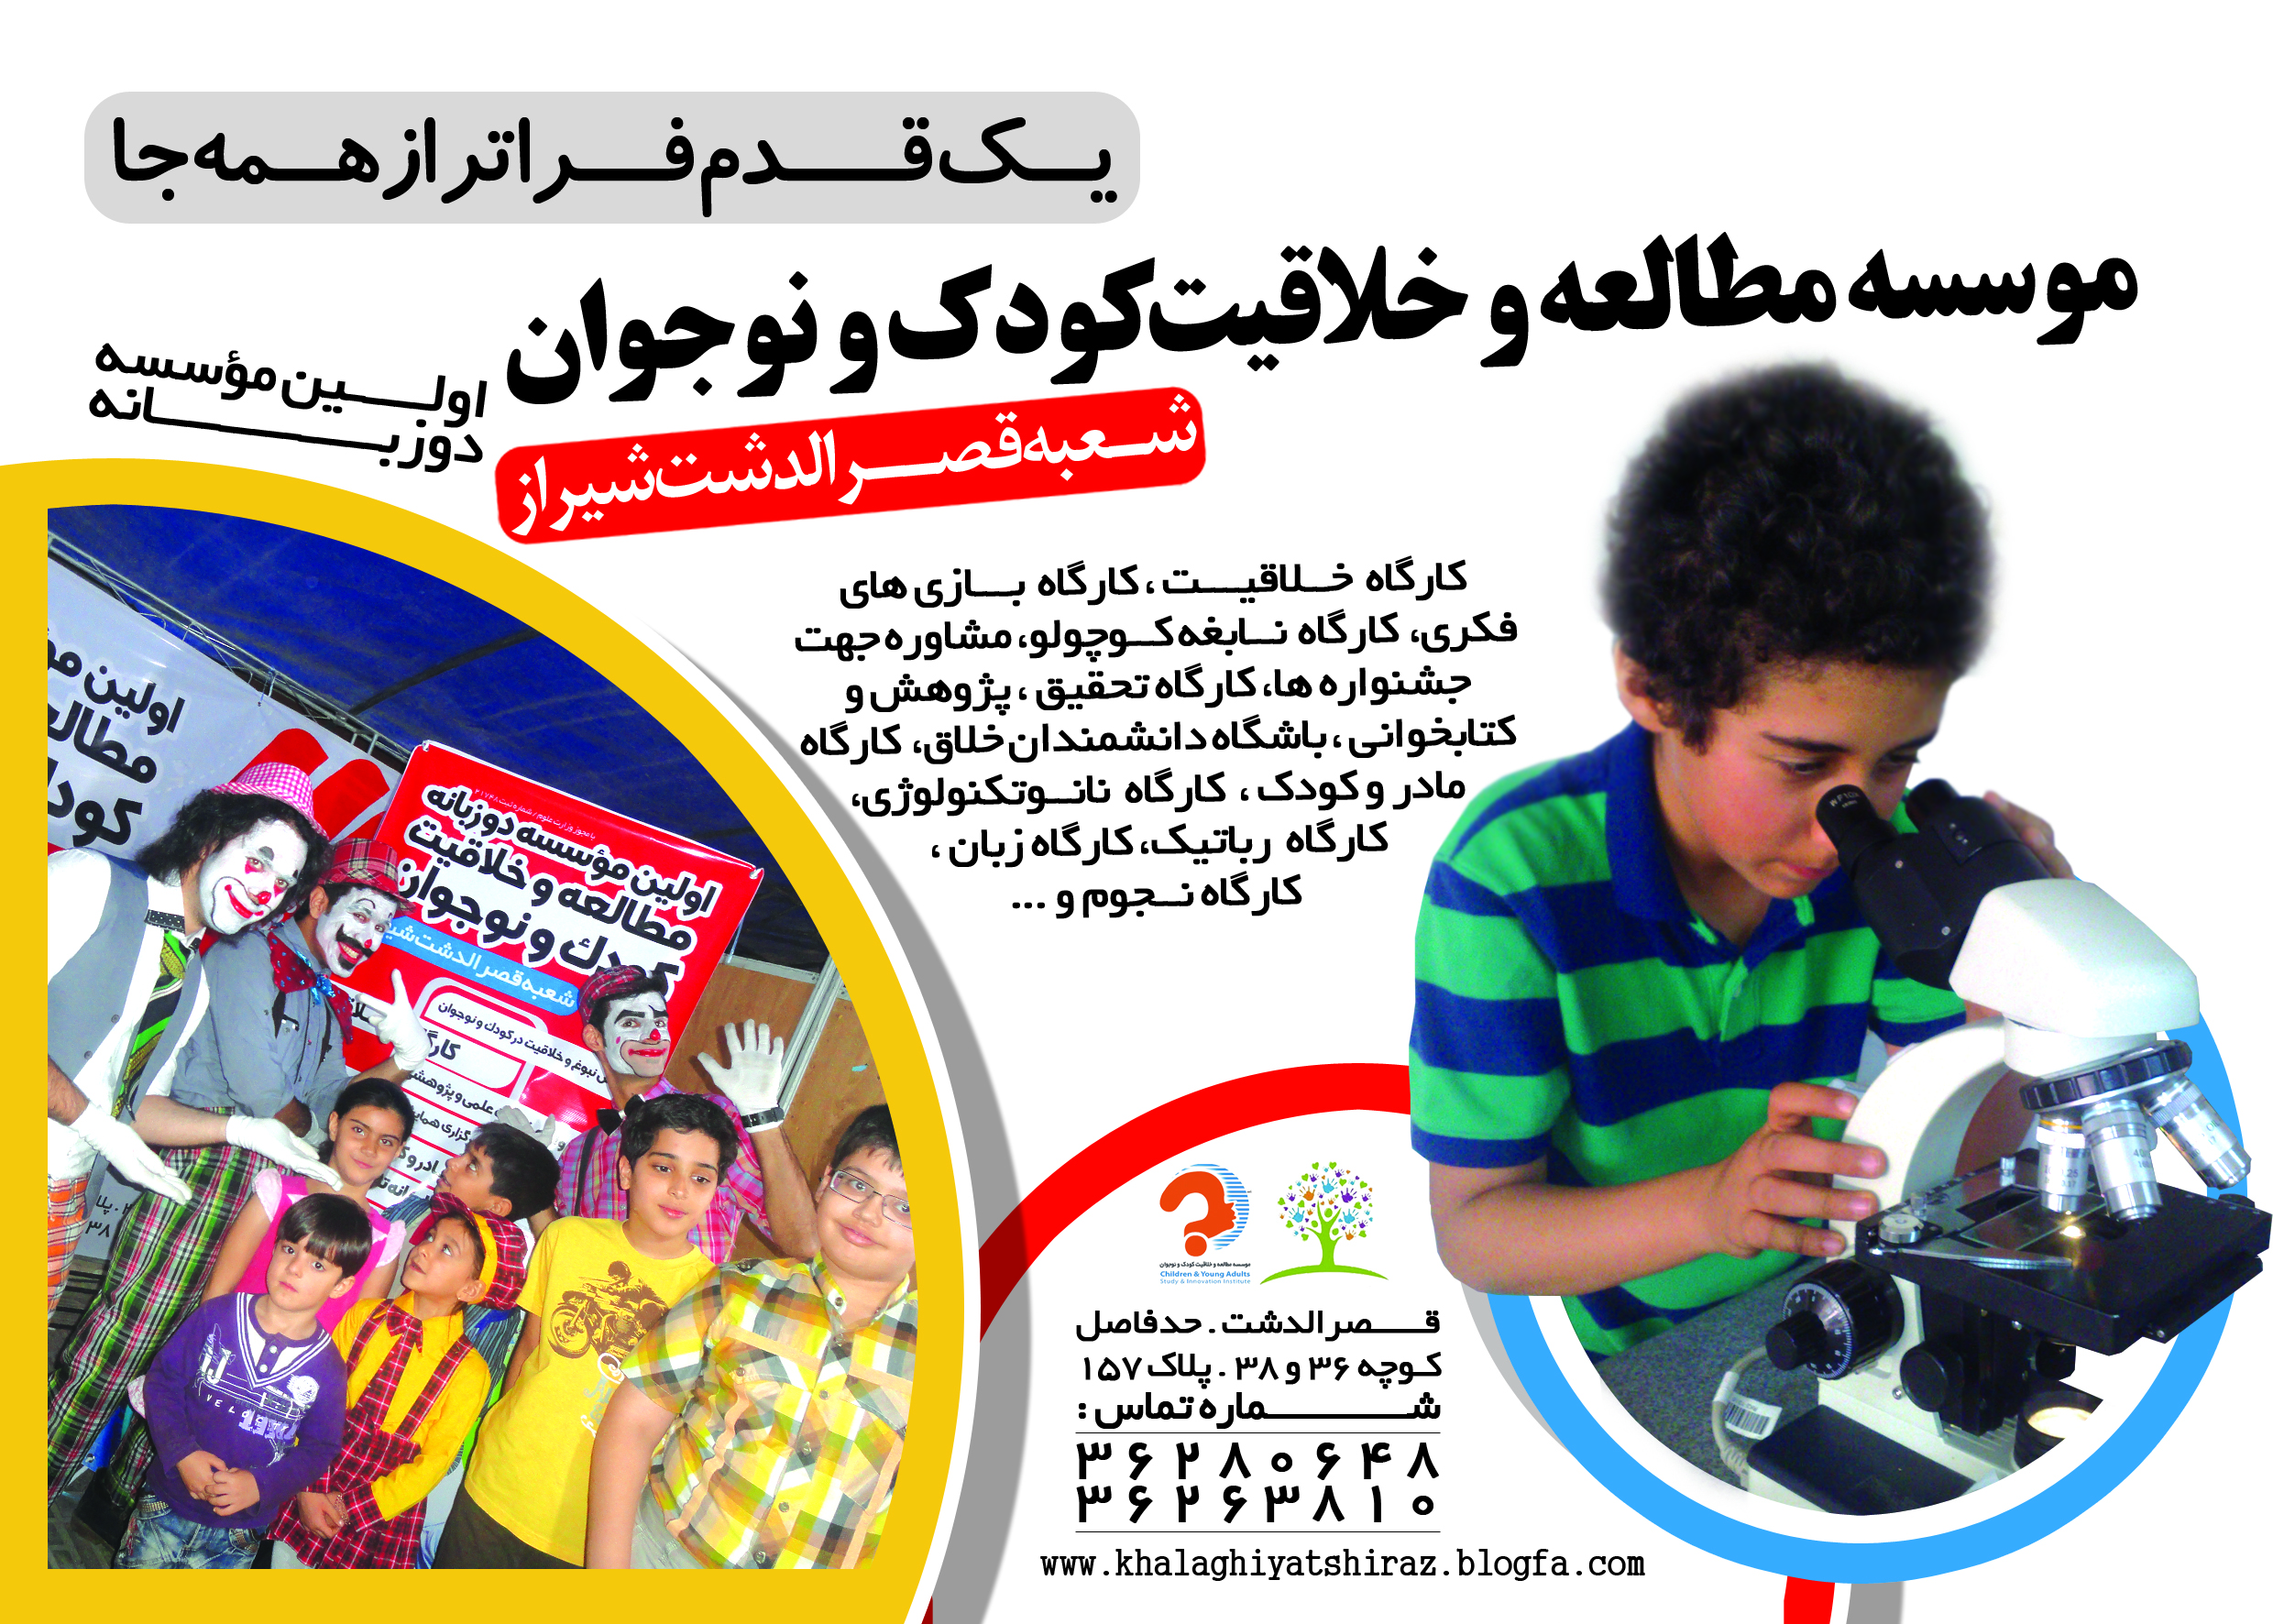 موسسه مطالعه و خلاقیت کودک و نوجوان شعبه قصرالدشت شیراز